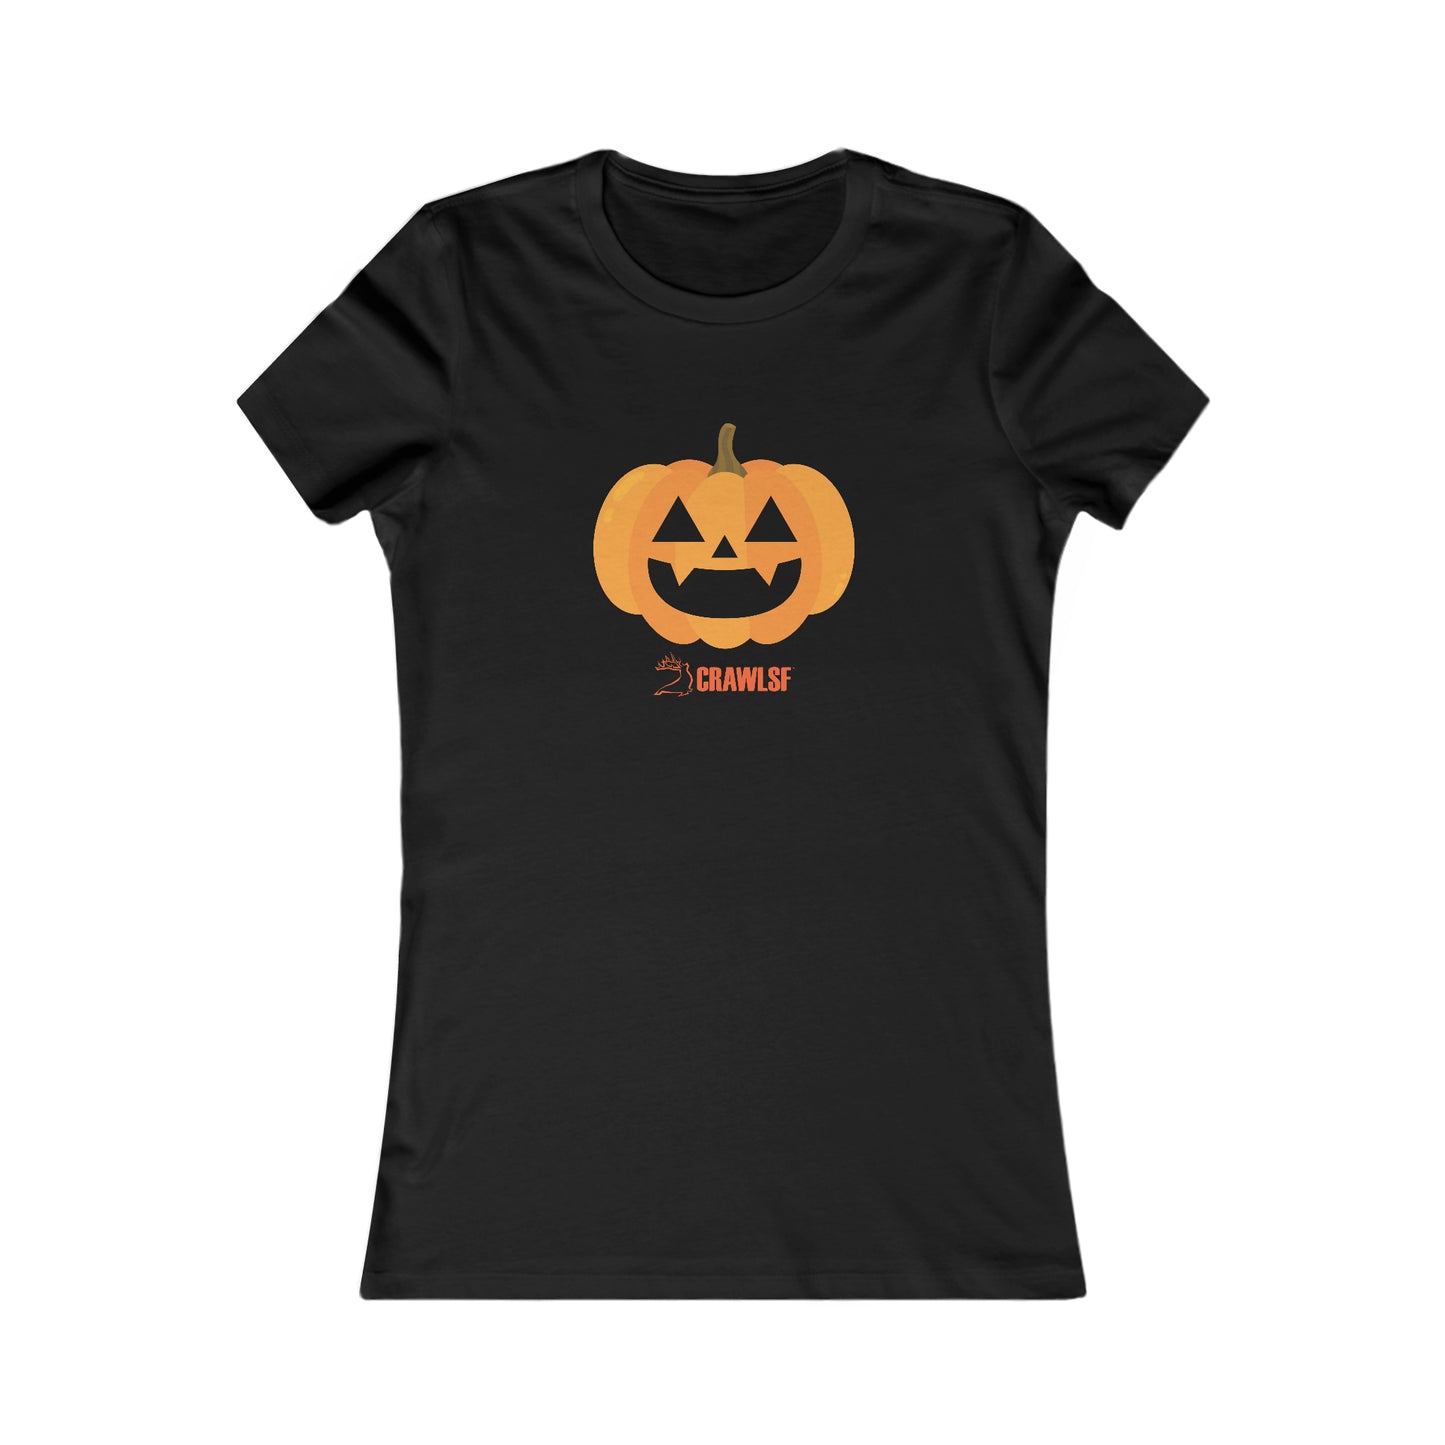 Pumpkin CrawlSF Halloween Tee